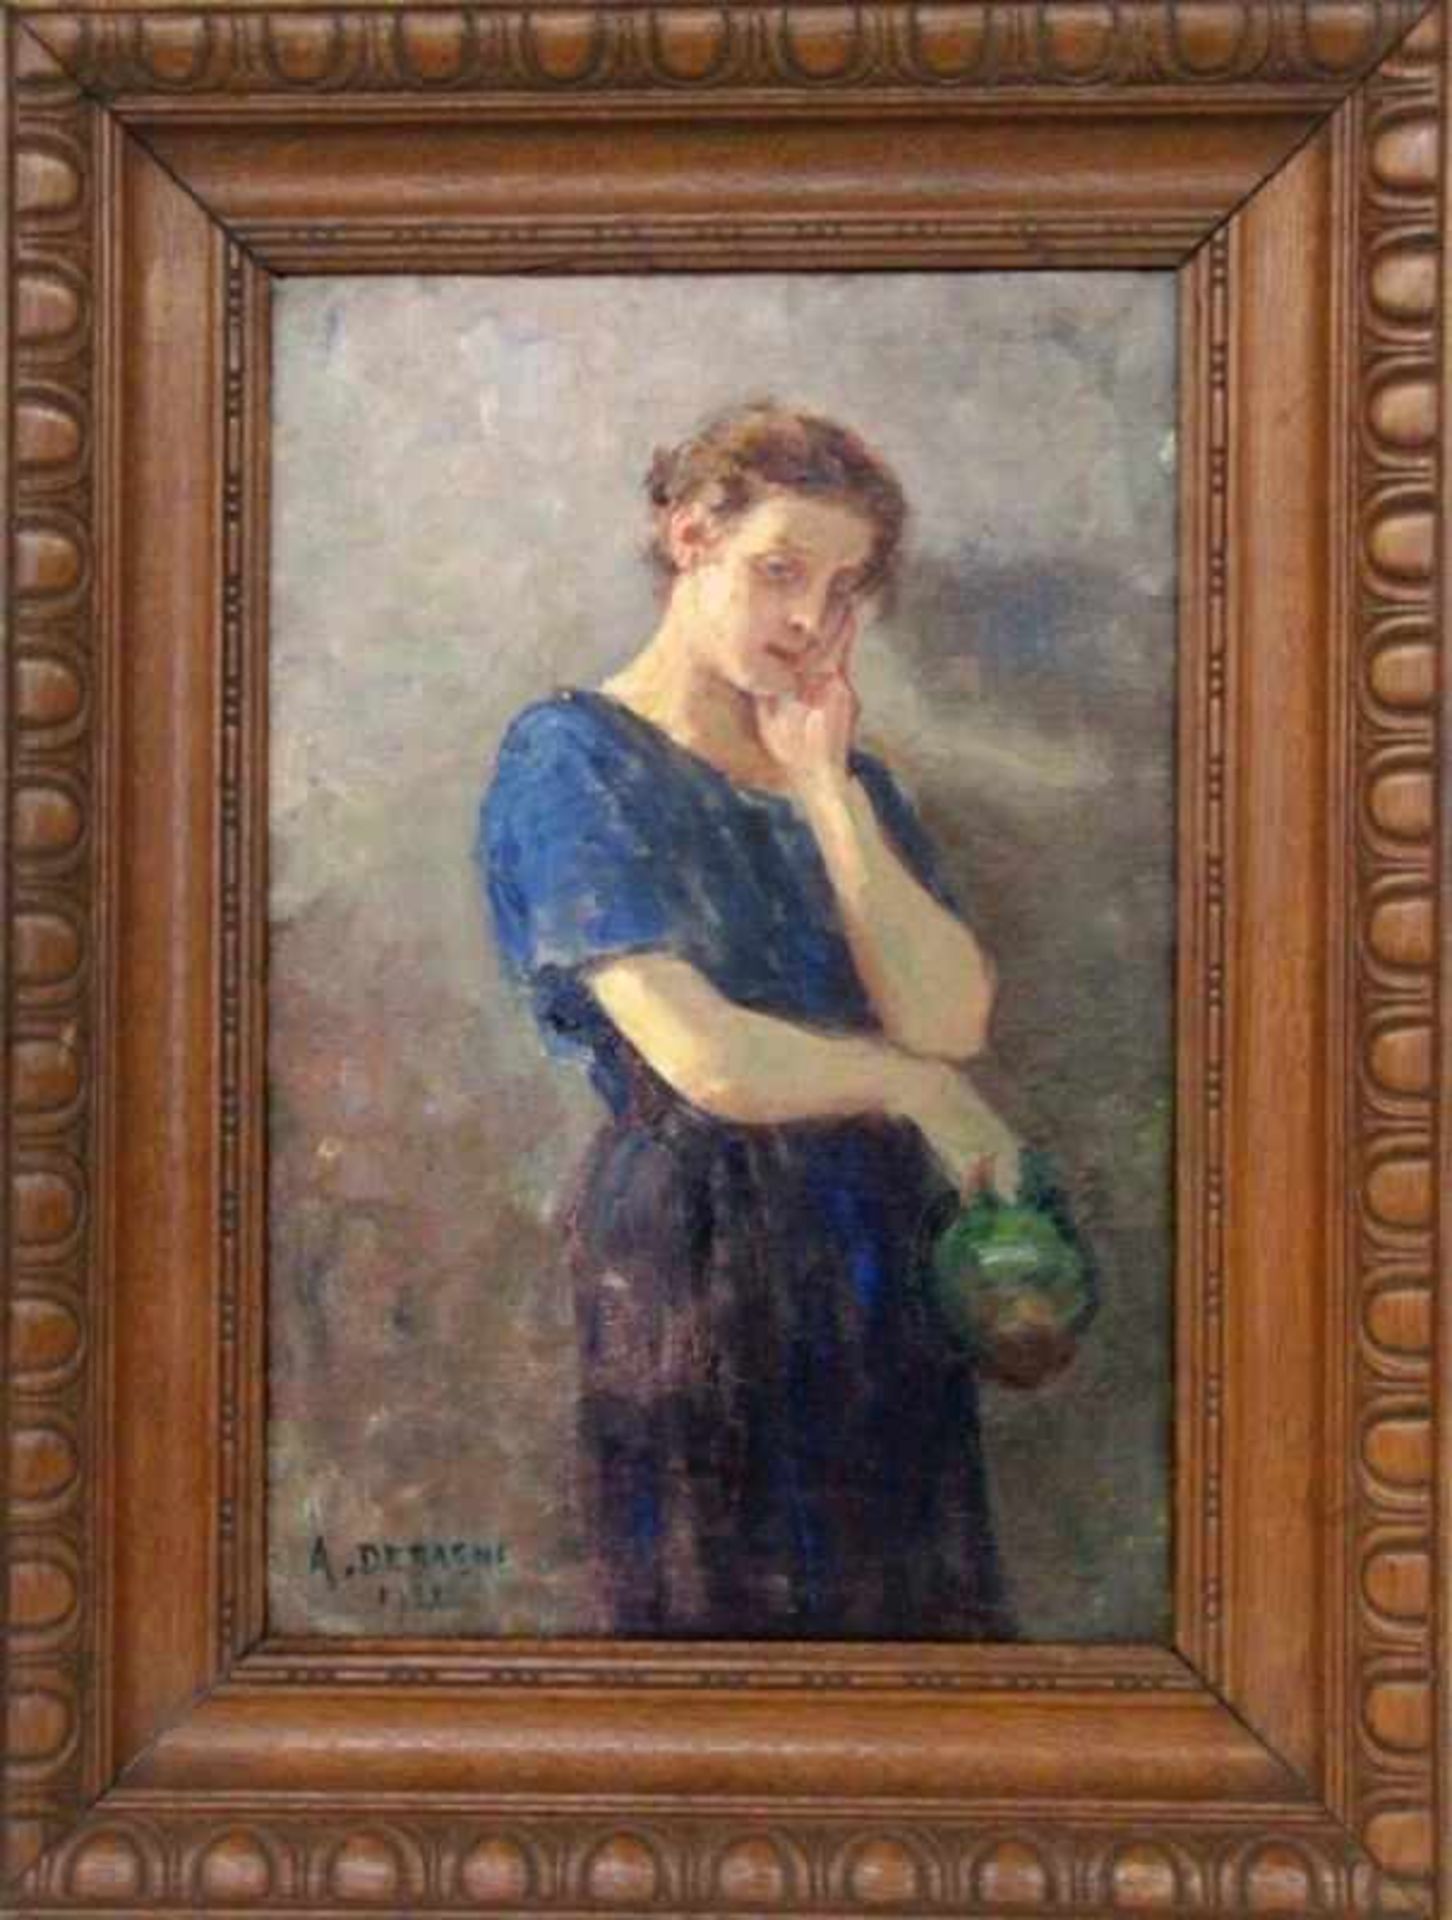 DEBAENE, ALPHONSE JULESDunkerque 1854 - 1928 Paris Frau mit Krug in nachdenklicher Pose. Öl/Lwd.,